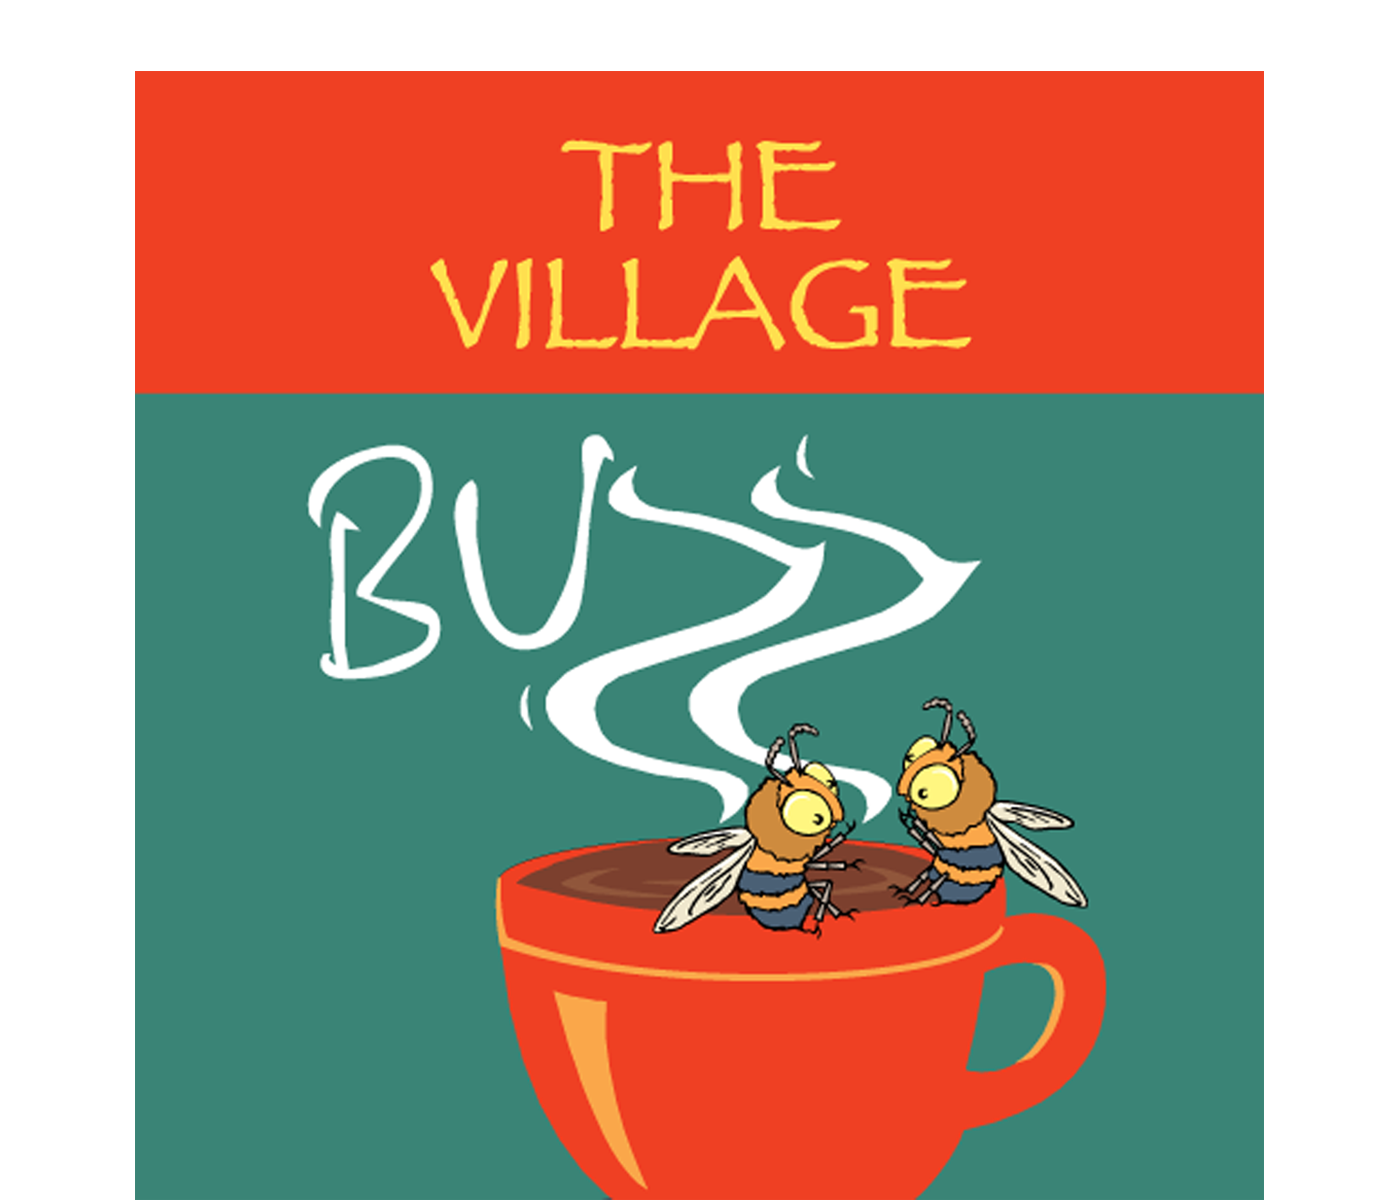 The Village Buzz logo